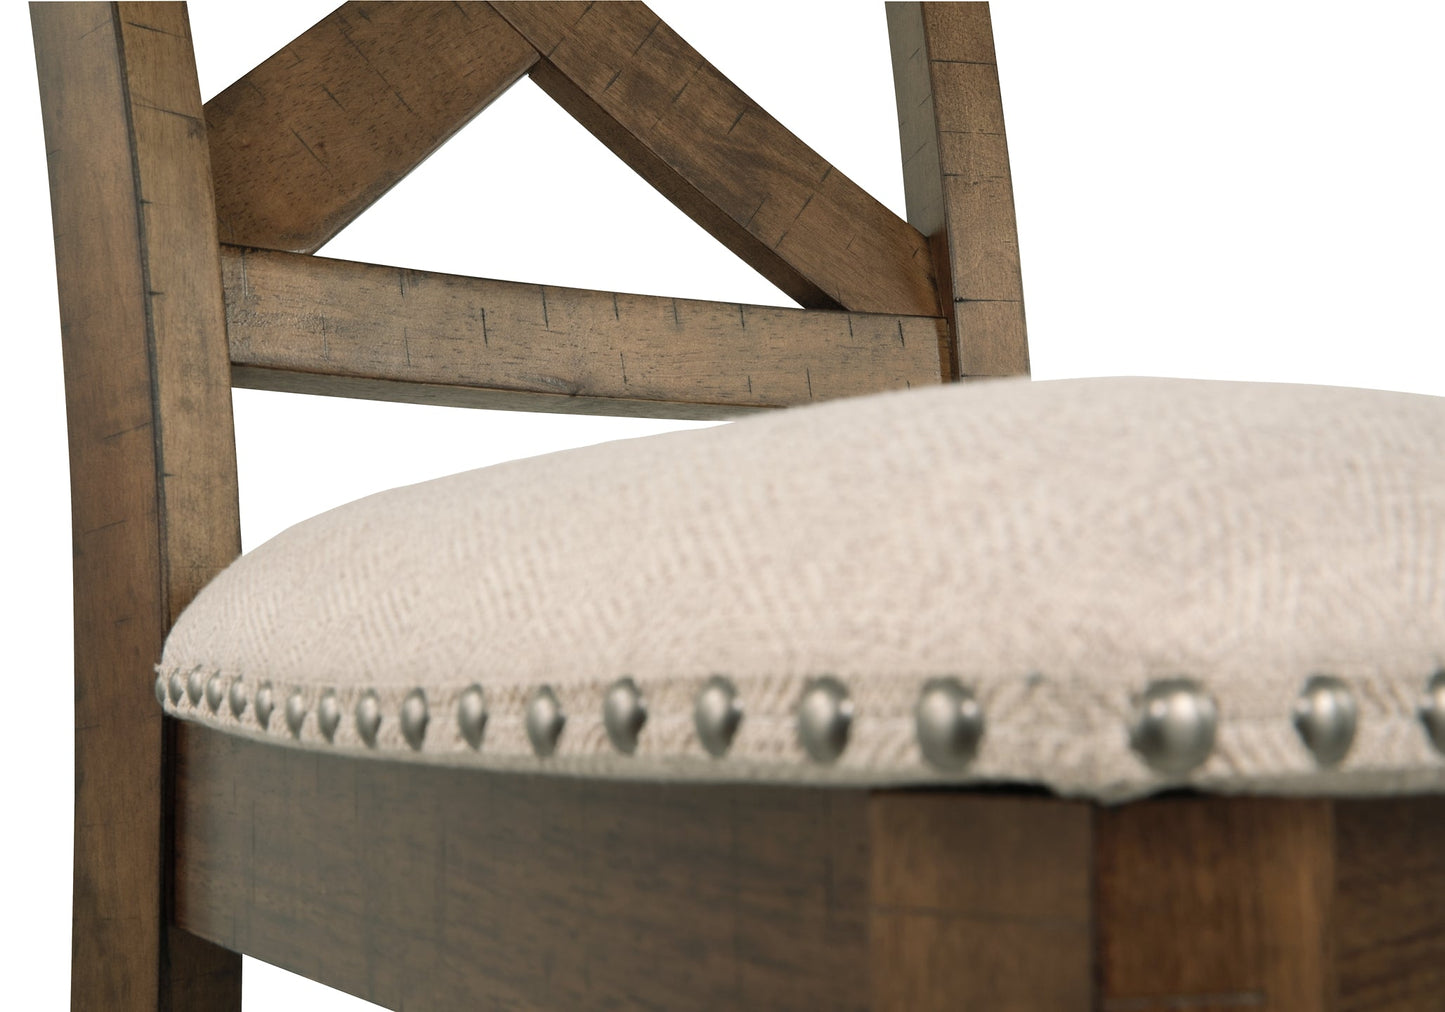 Moriville Upholstered Barstool (2/CN) Smyrna Furniture Outlet